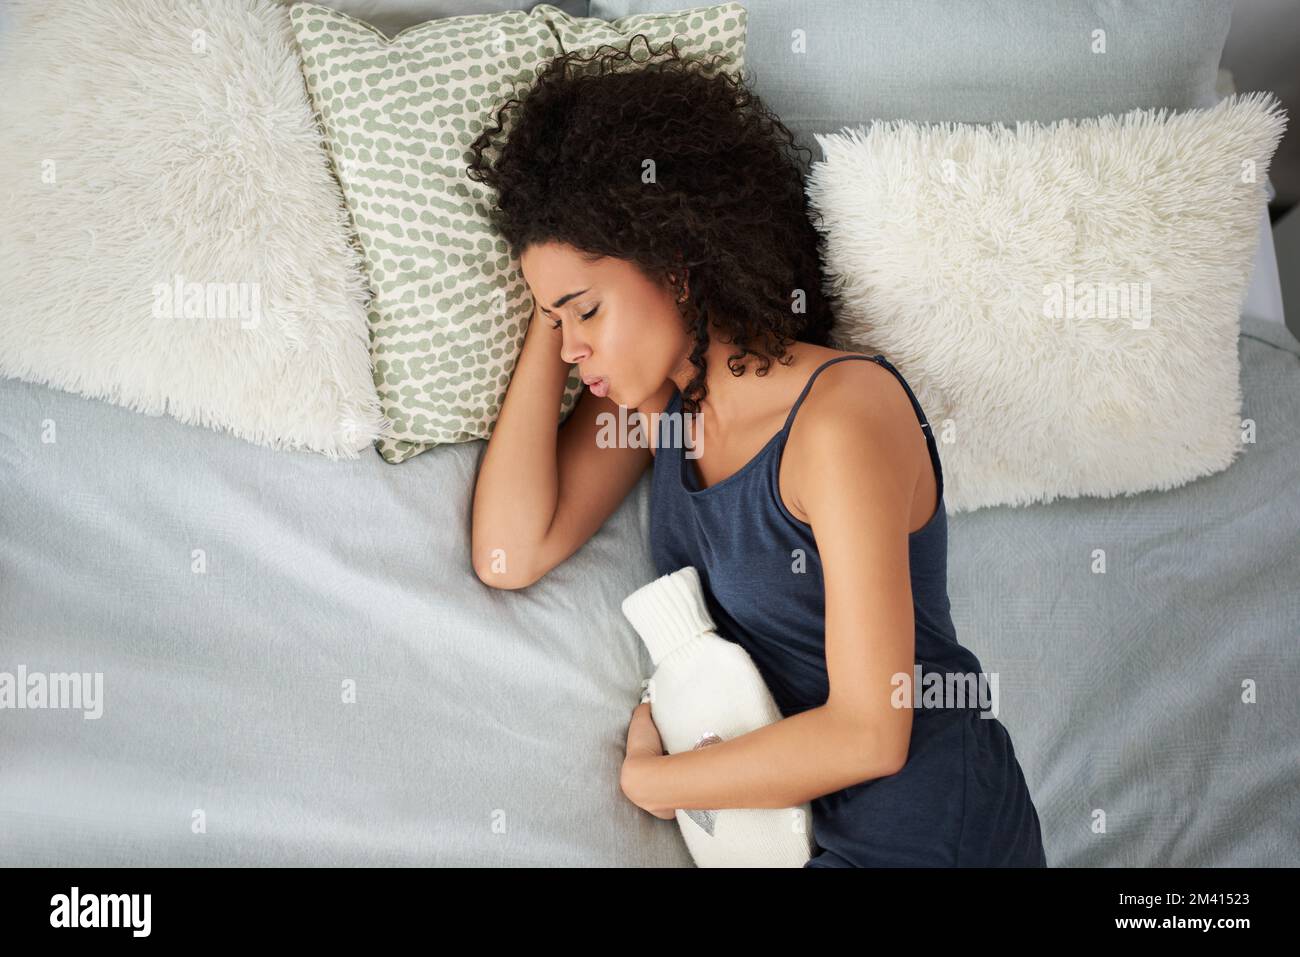 Respirare attraverso il dolore. una giovane donna attraente che soffre di crampi d'epoca mentre sdraiata a letto con una bottiglia d'acqua calda. Foto Stock